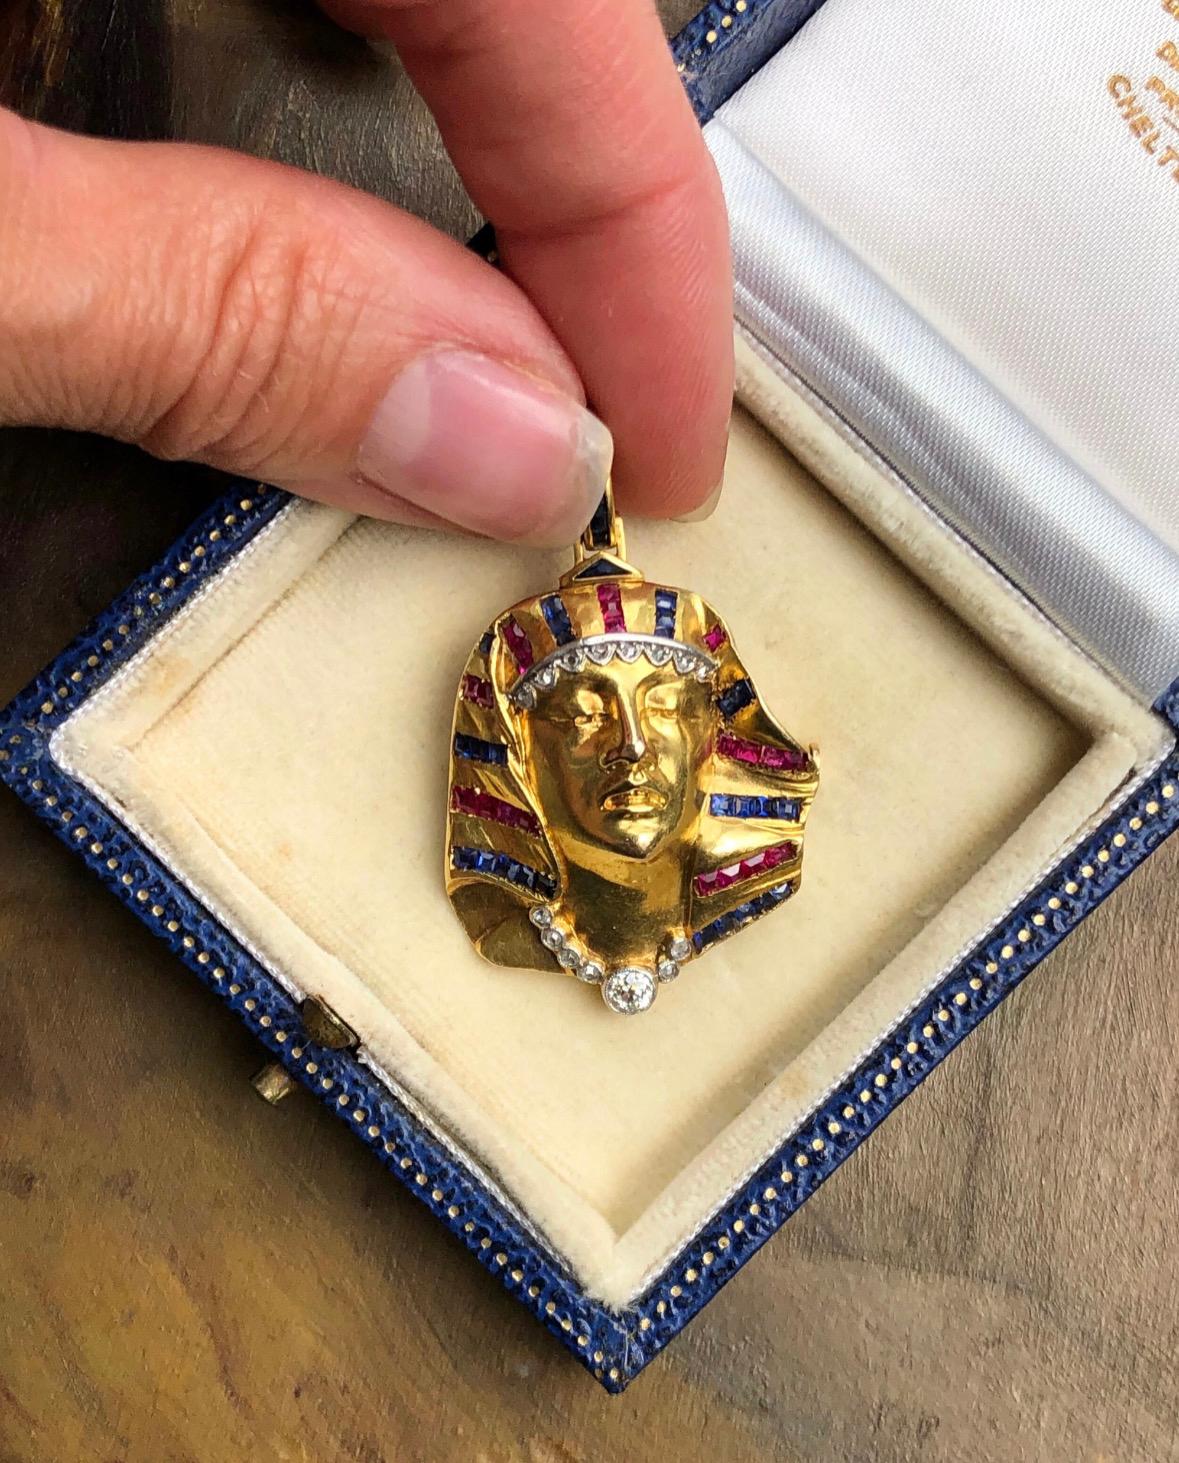 Ägyptischer Revival-Schmuck wurde während der Art-déco-Periode sehr populär, nachdem das Grab von König Tut 1922 geöffnet wurde. Dieser französische Pharao aus 18-karätigem Gold ist fein von Hand detailliert und trägt eine diamantene Halskette und